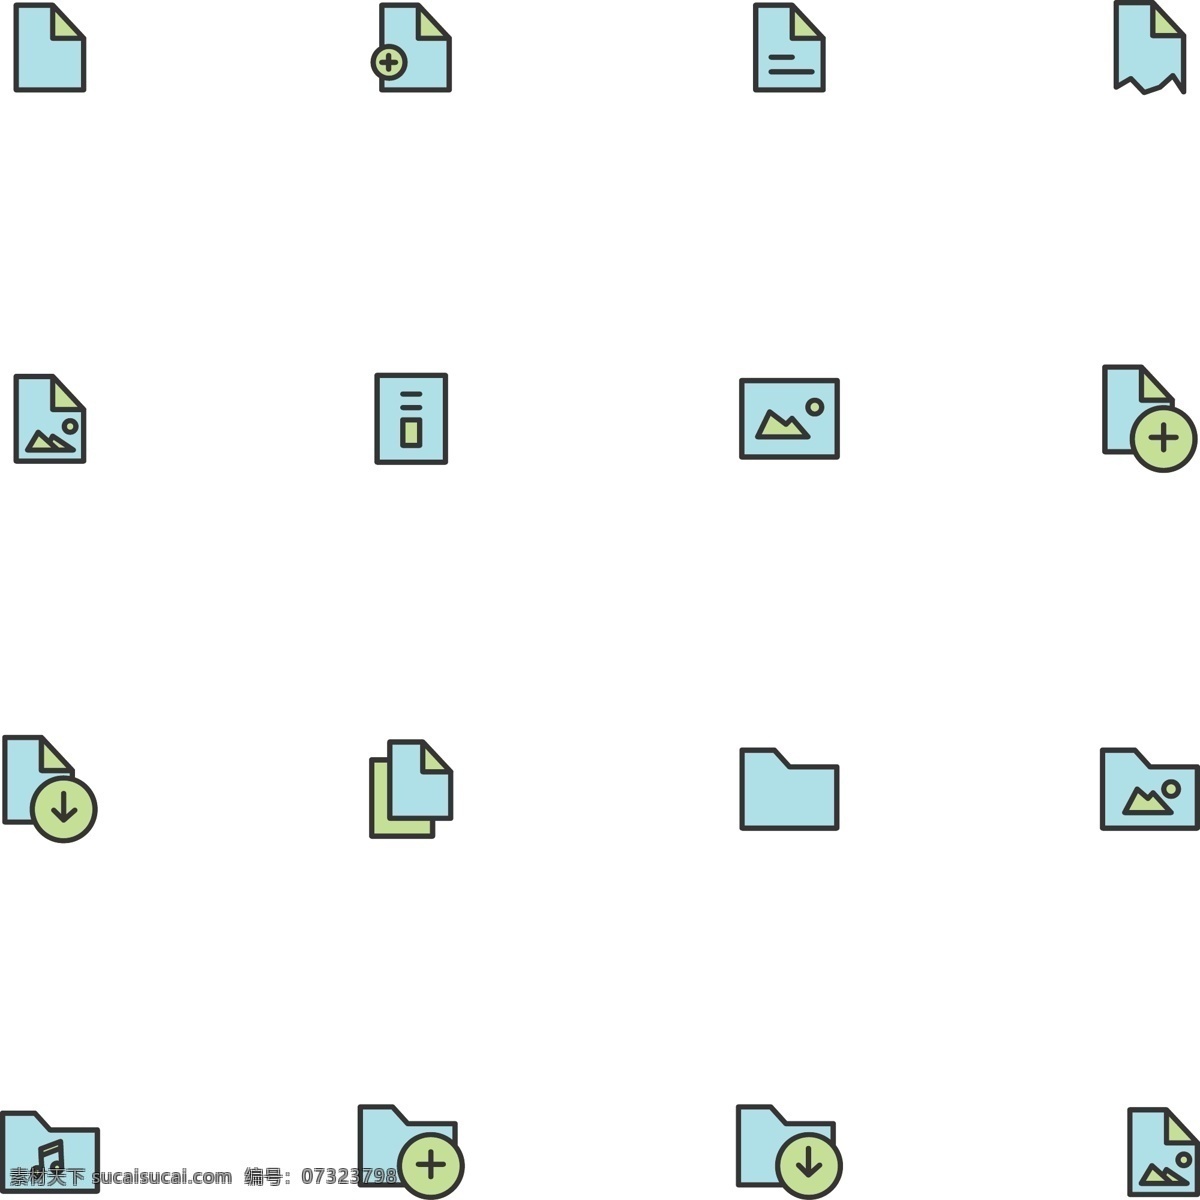 款 蓝色 文件夹 icon icon图标 文件 互联网 数据 金融 icon下载